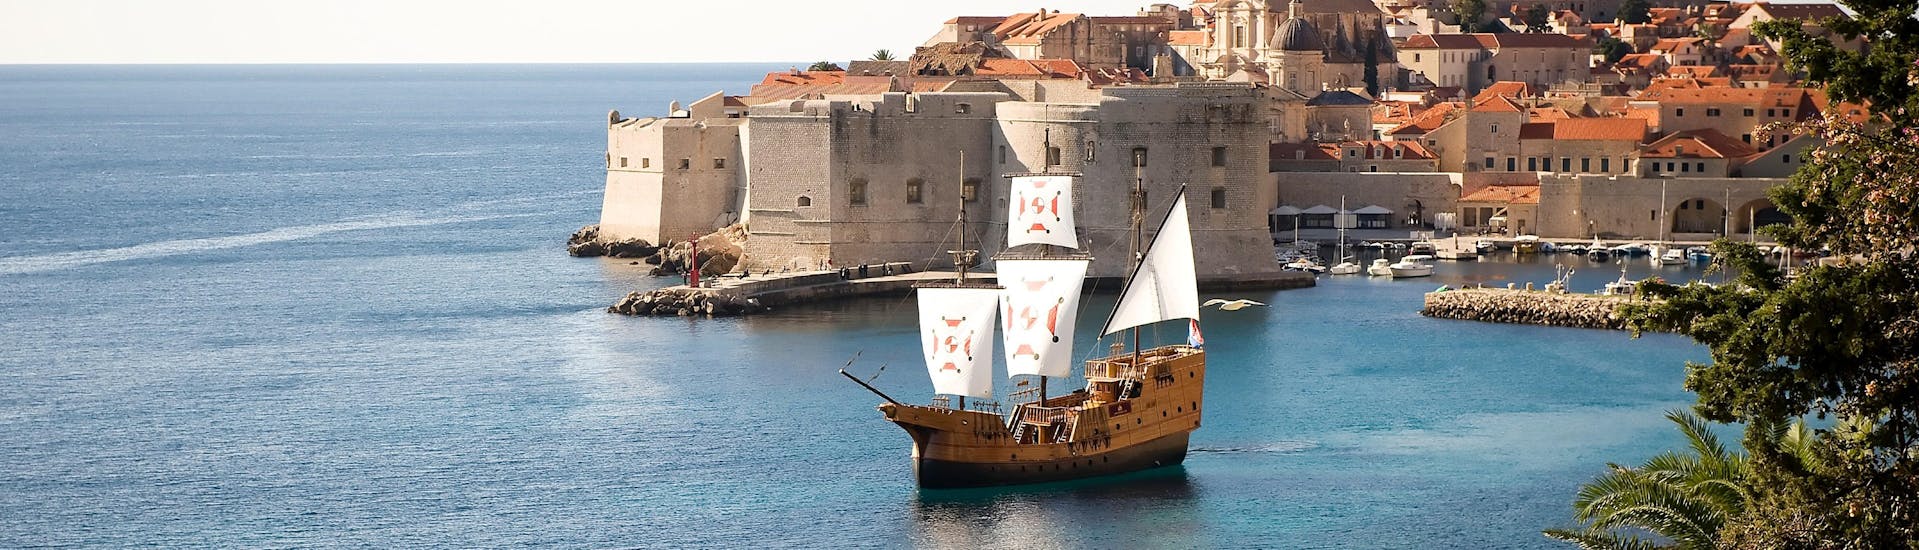 Foto van het traditionele Karaka schip dat door Karaka Dubrovnik wordt gebruikt voor de boottochten.